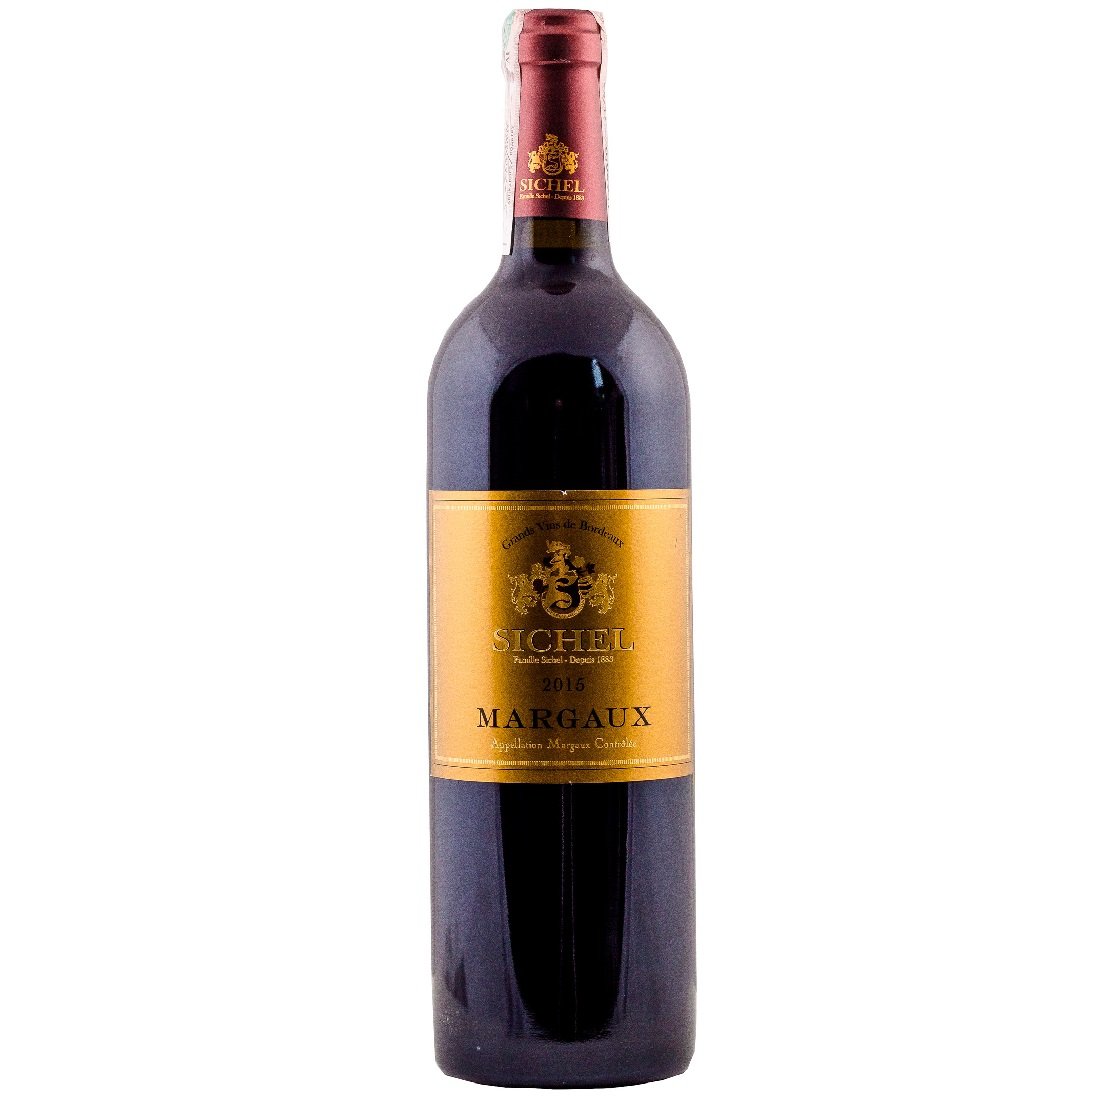 Вино Sichel Margaux 2015 AOC, червоне, сухе, 0,75 л - фото 1